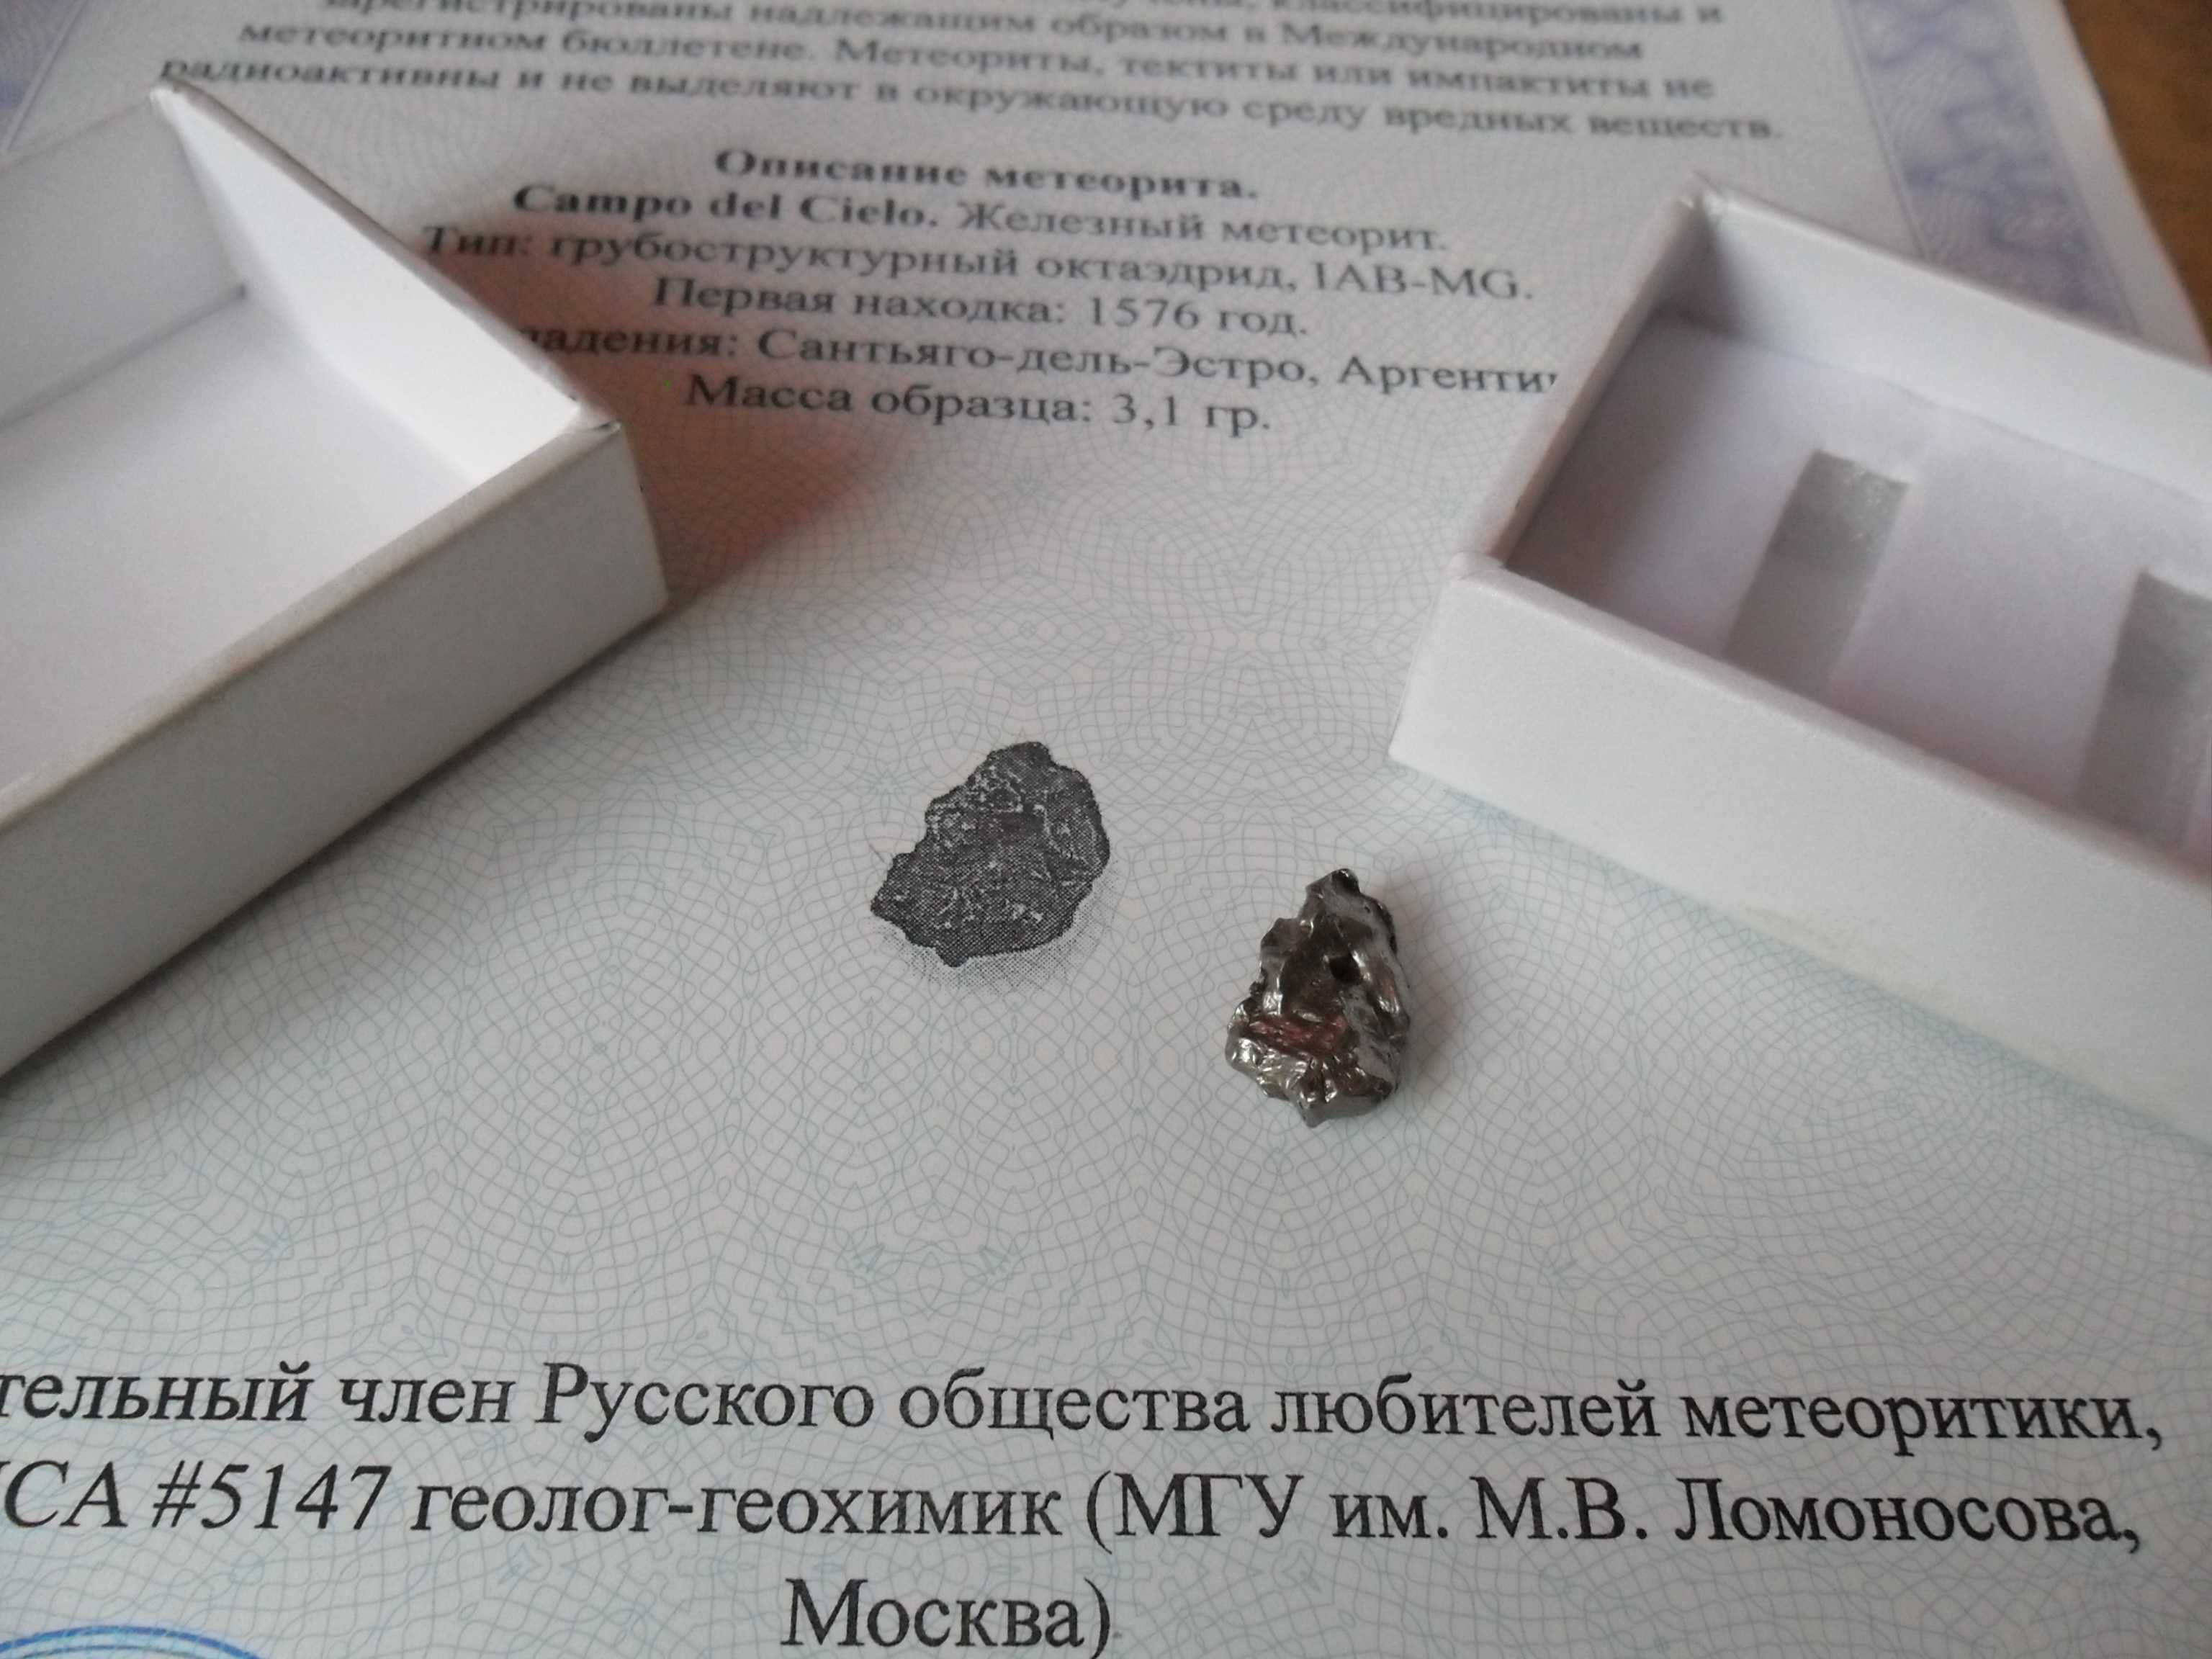 Метеорит  Кампо-дель-Сьело